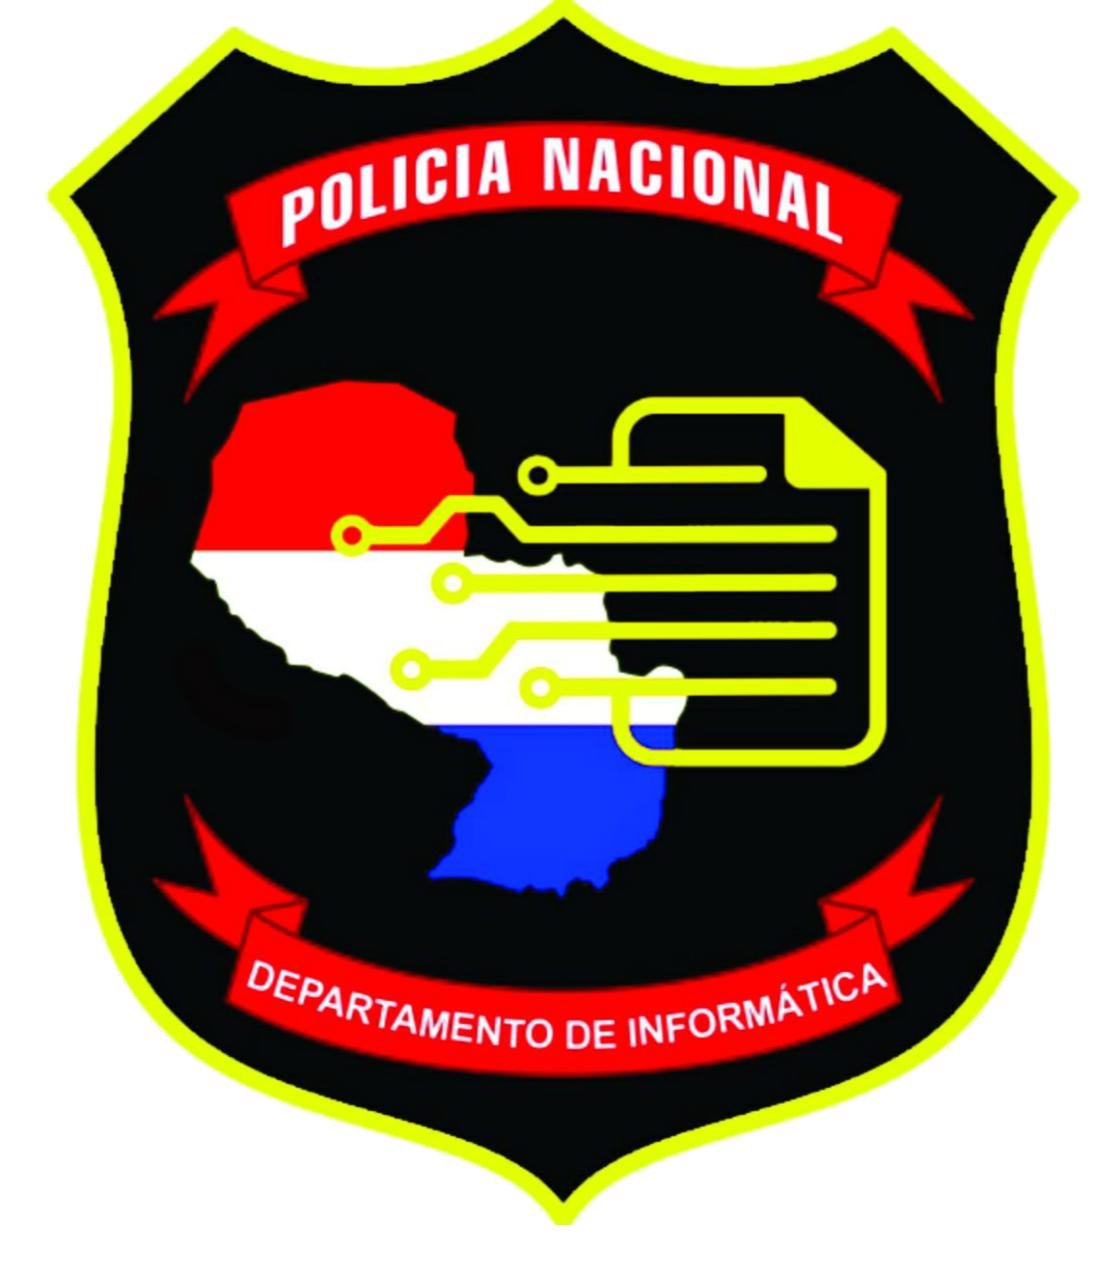 Departamento de Informática de la Policía Nacional